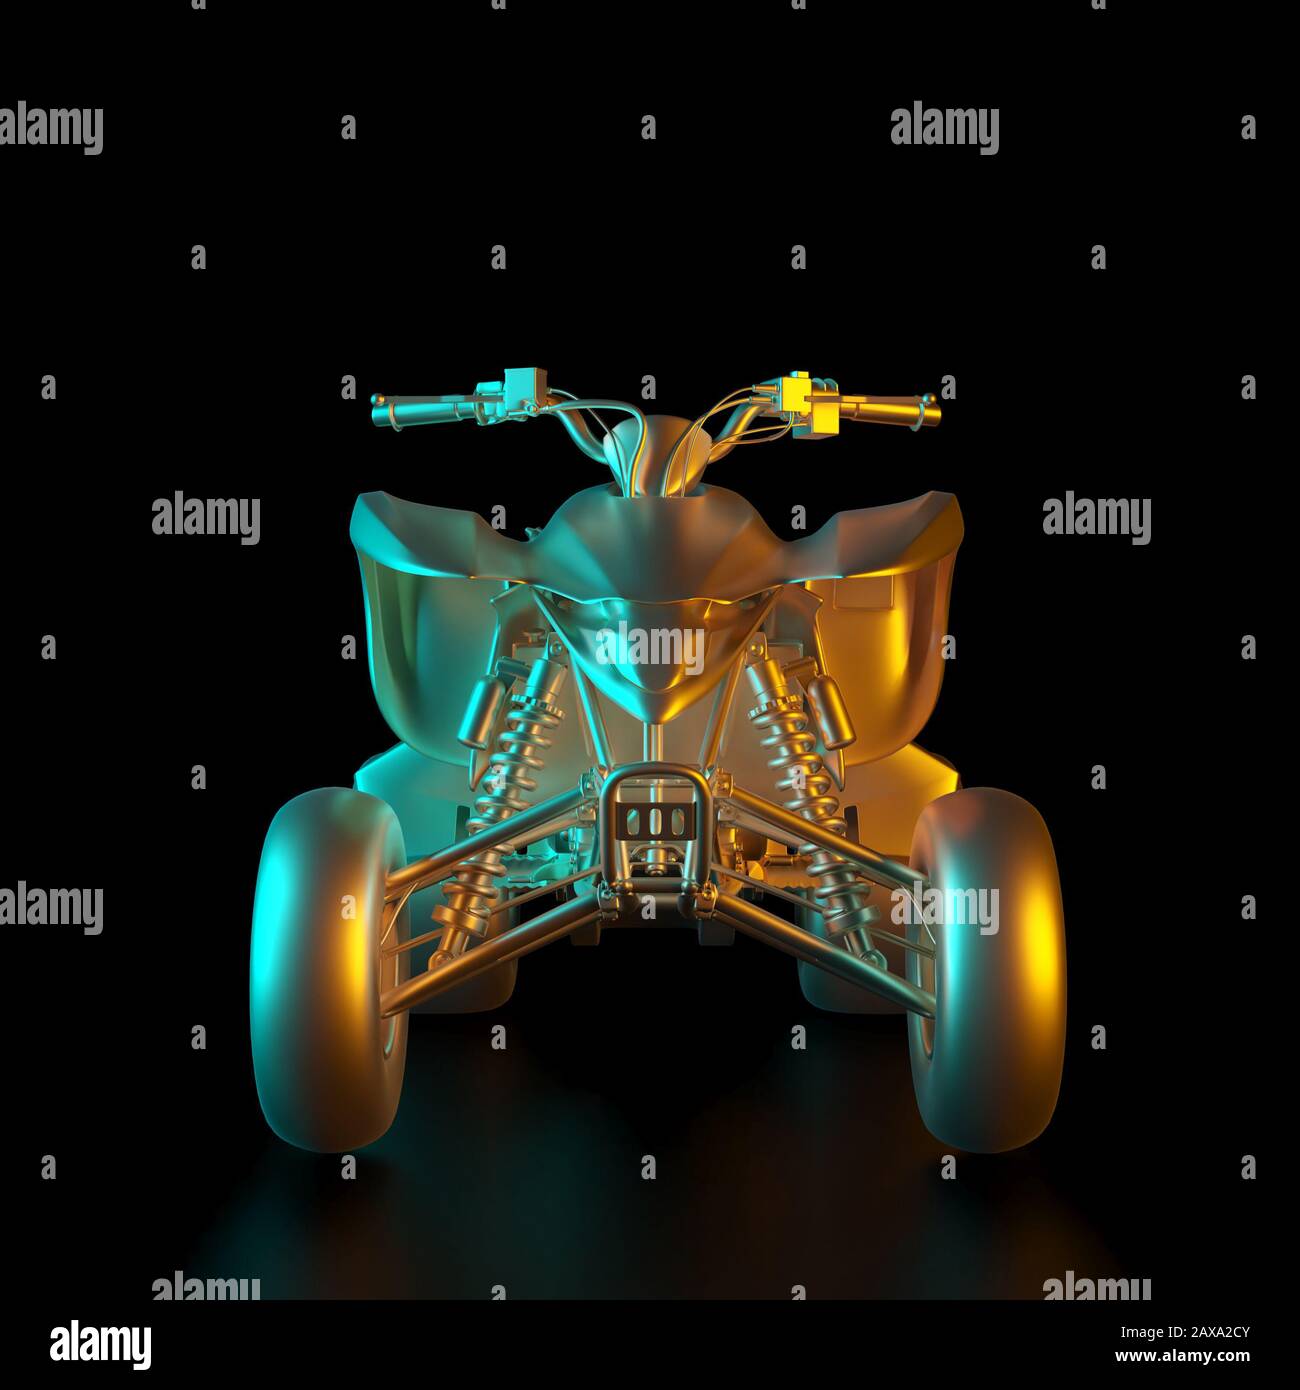 3D-Renderbild eines goldfarbenen Geländevierers. Niemand in der Nähe, schwarzer Hintergrund. Luxus- und Motorsportkonzept. Stockfoto